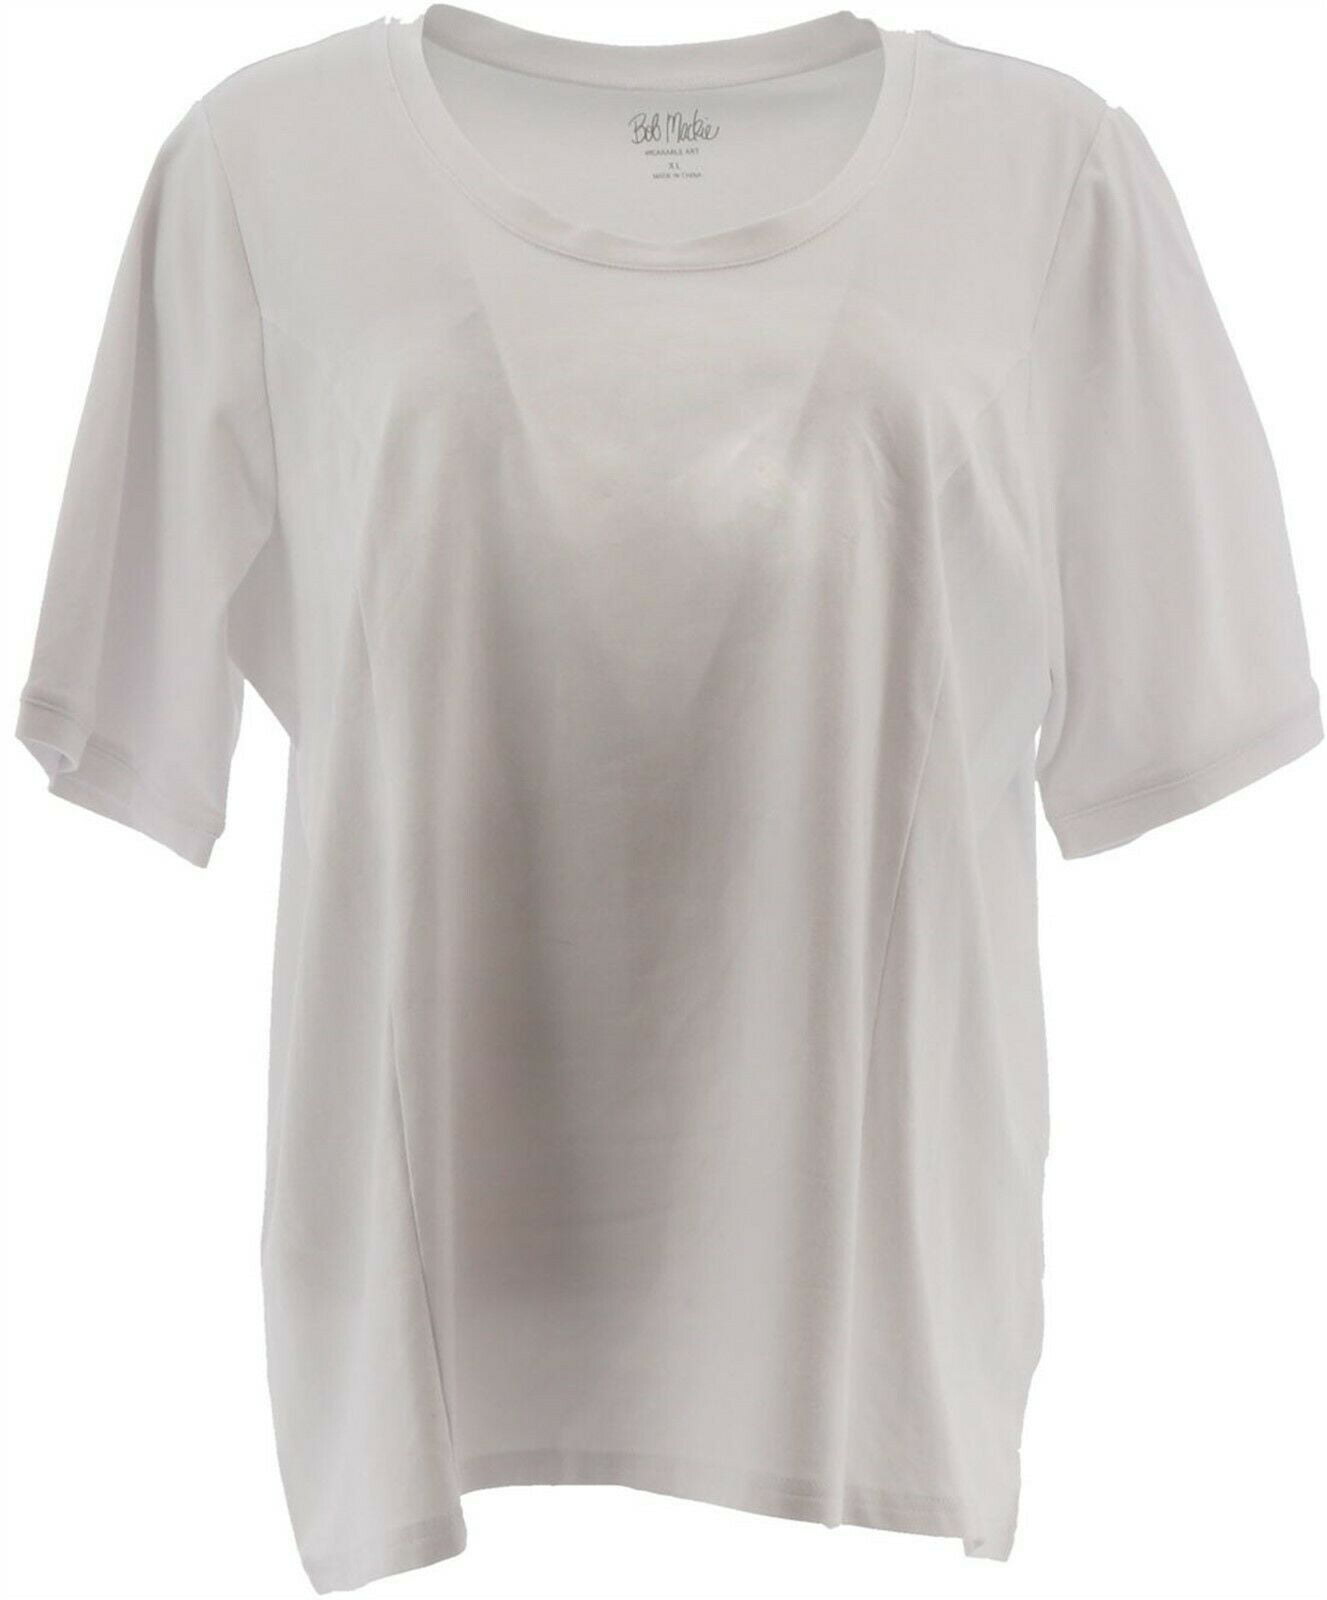 Bob Mackie - Bob Mackie Essential Elbow Slv T-Shirt White XS NEW ...